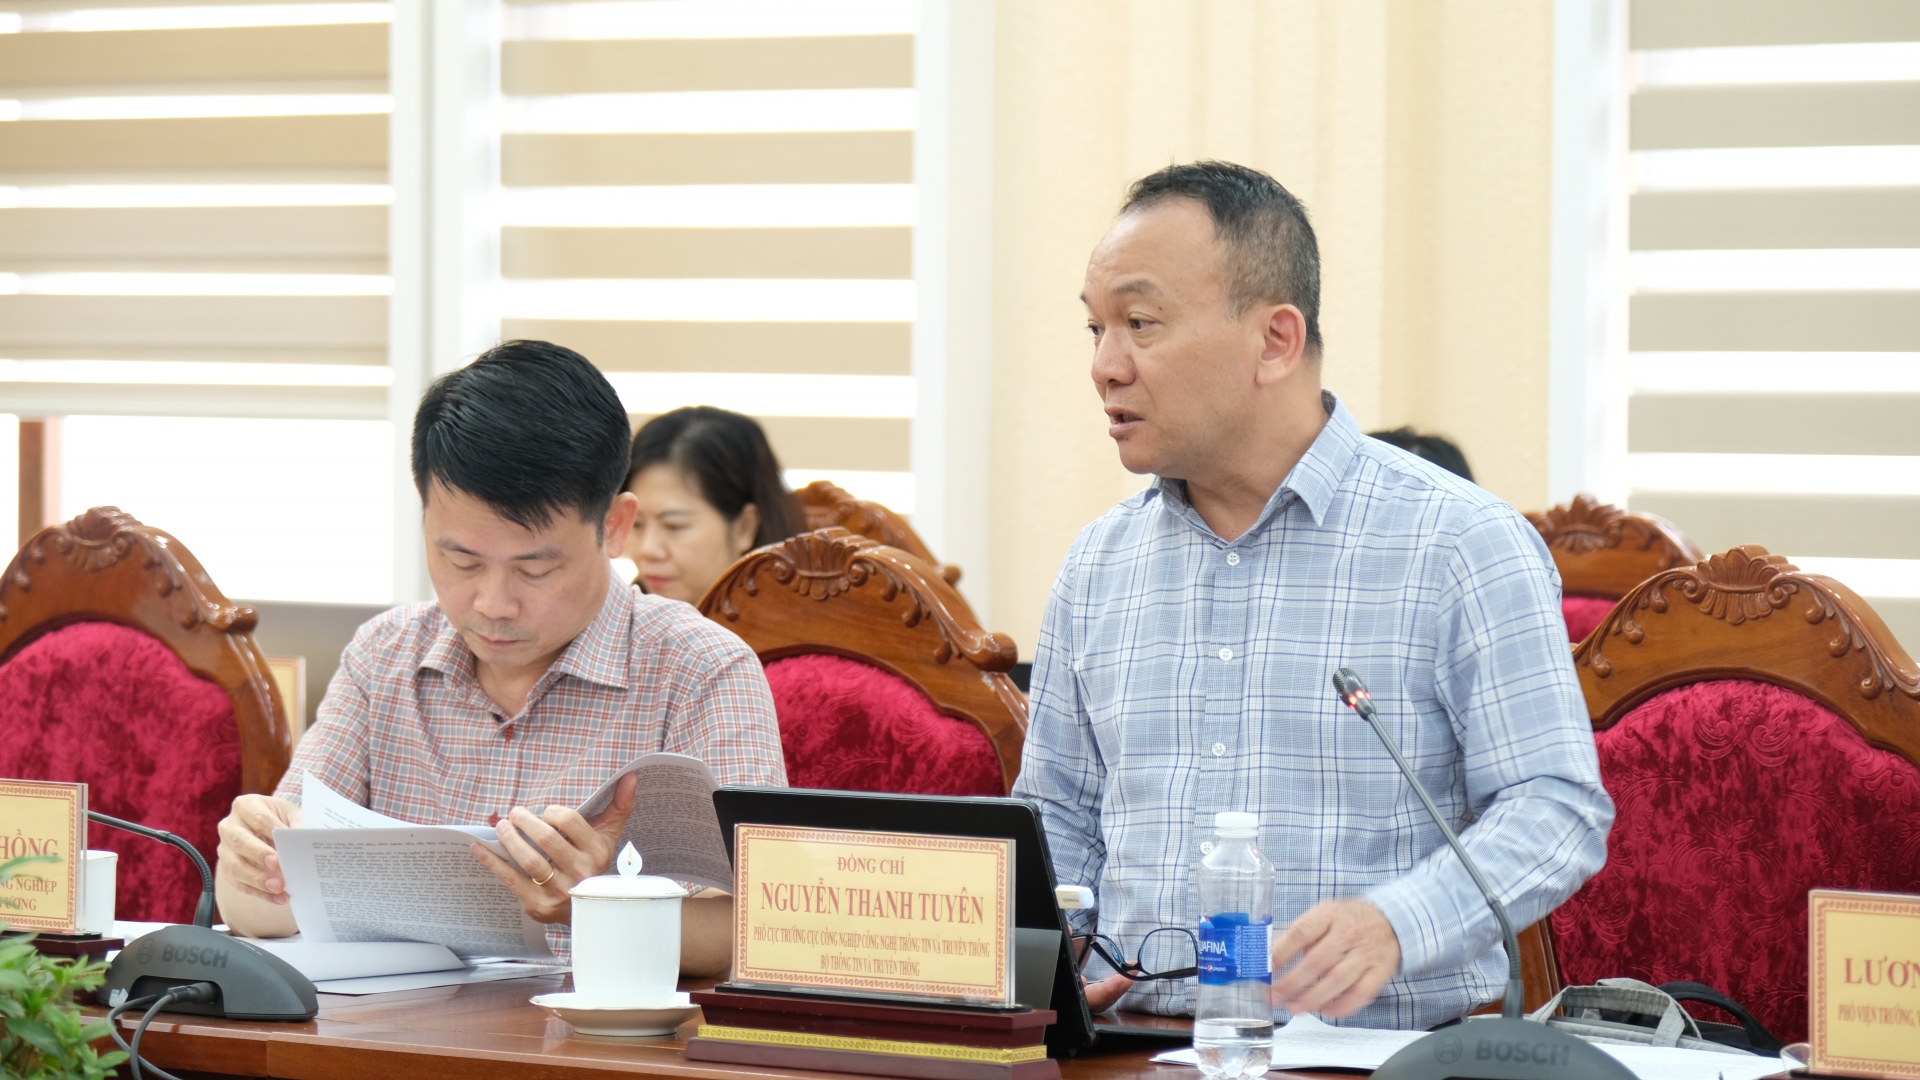 Đồng chí Nguyễn Thanh Tuyên - Phó Cục trưởng Cục Công nghiệp Công nghệ Thông tin và Thông tin, Bộ Thông tin và Truyền nêu ý kiến về vấn đề chuyển đổi số